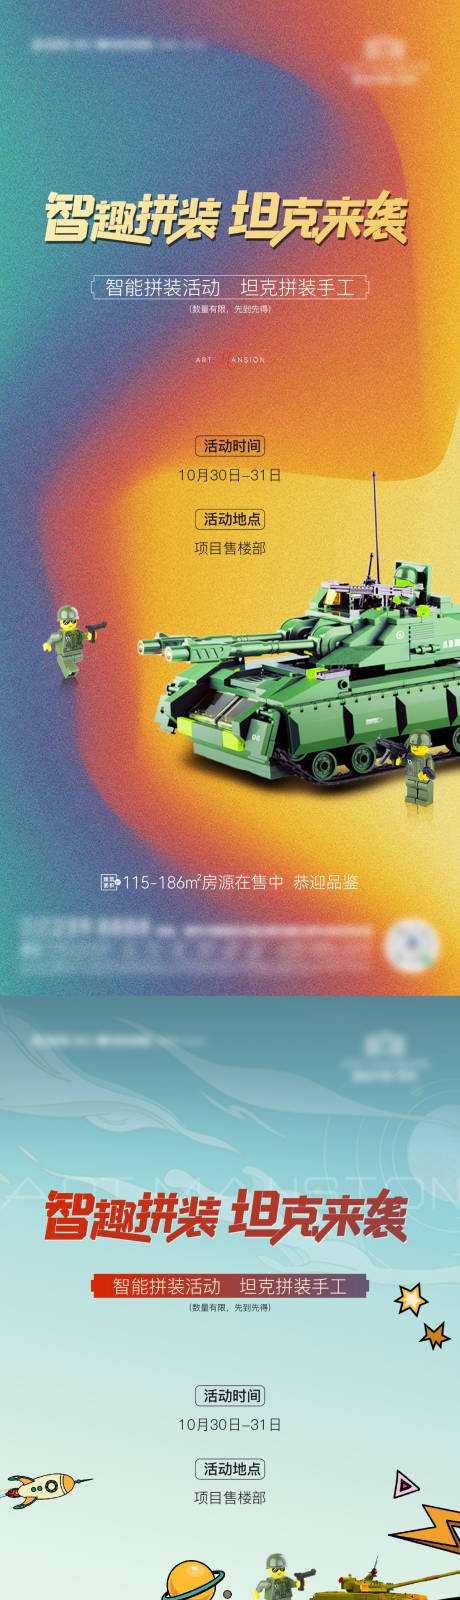 地产拼装坦克DIY海报